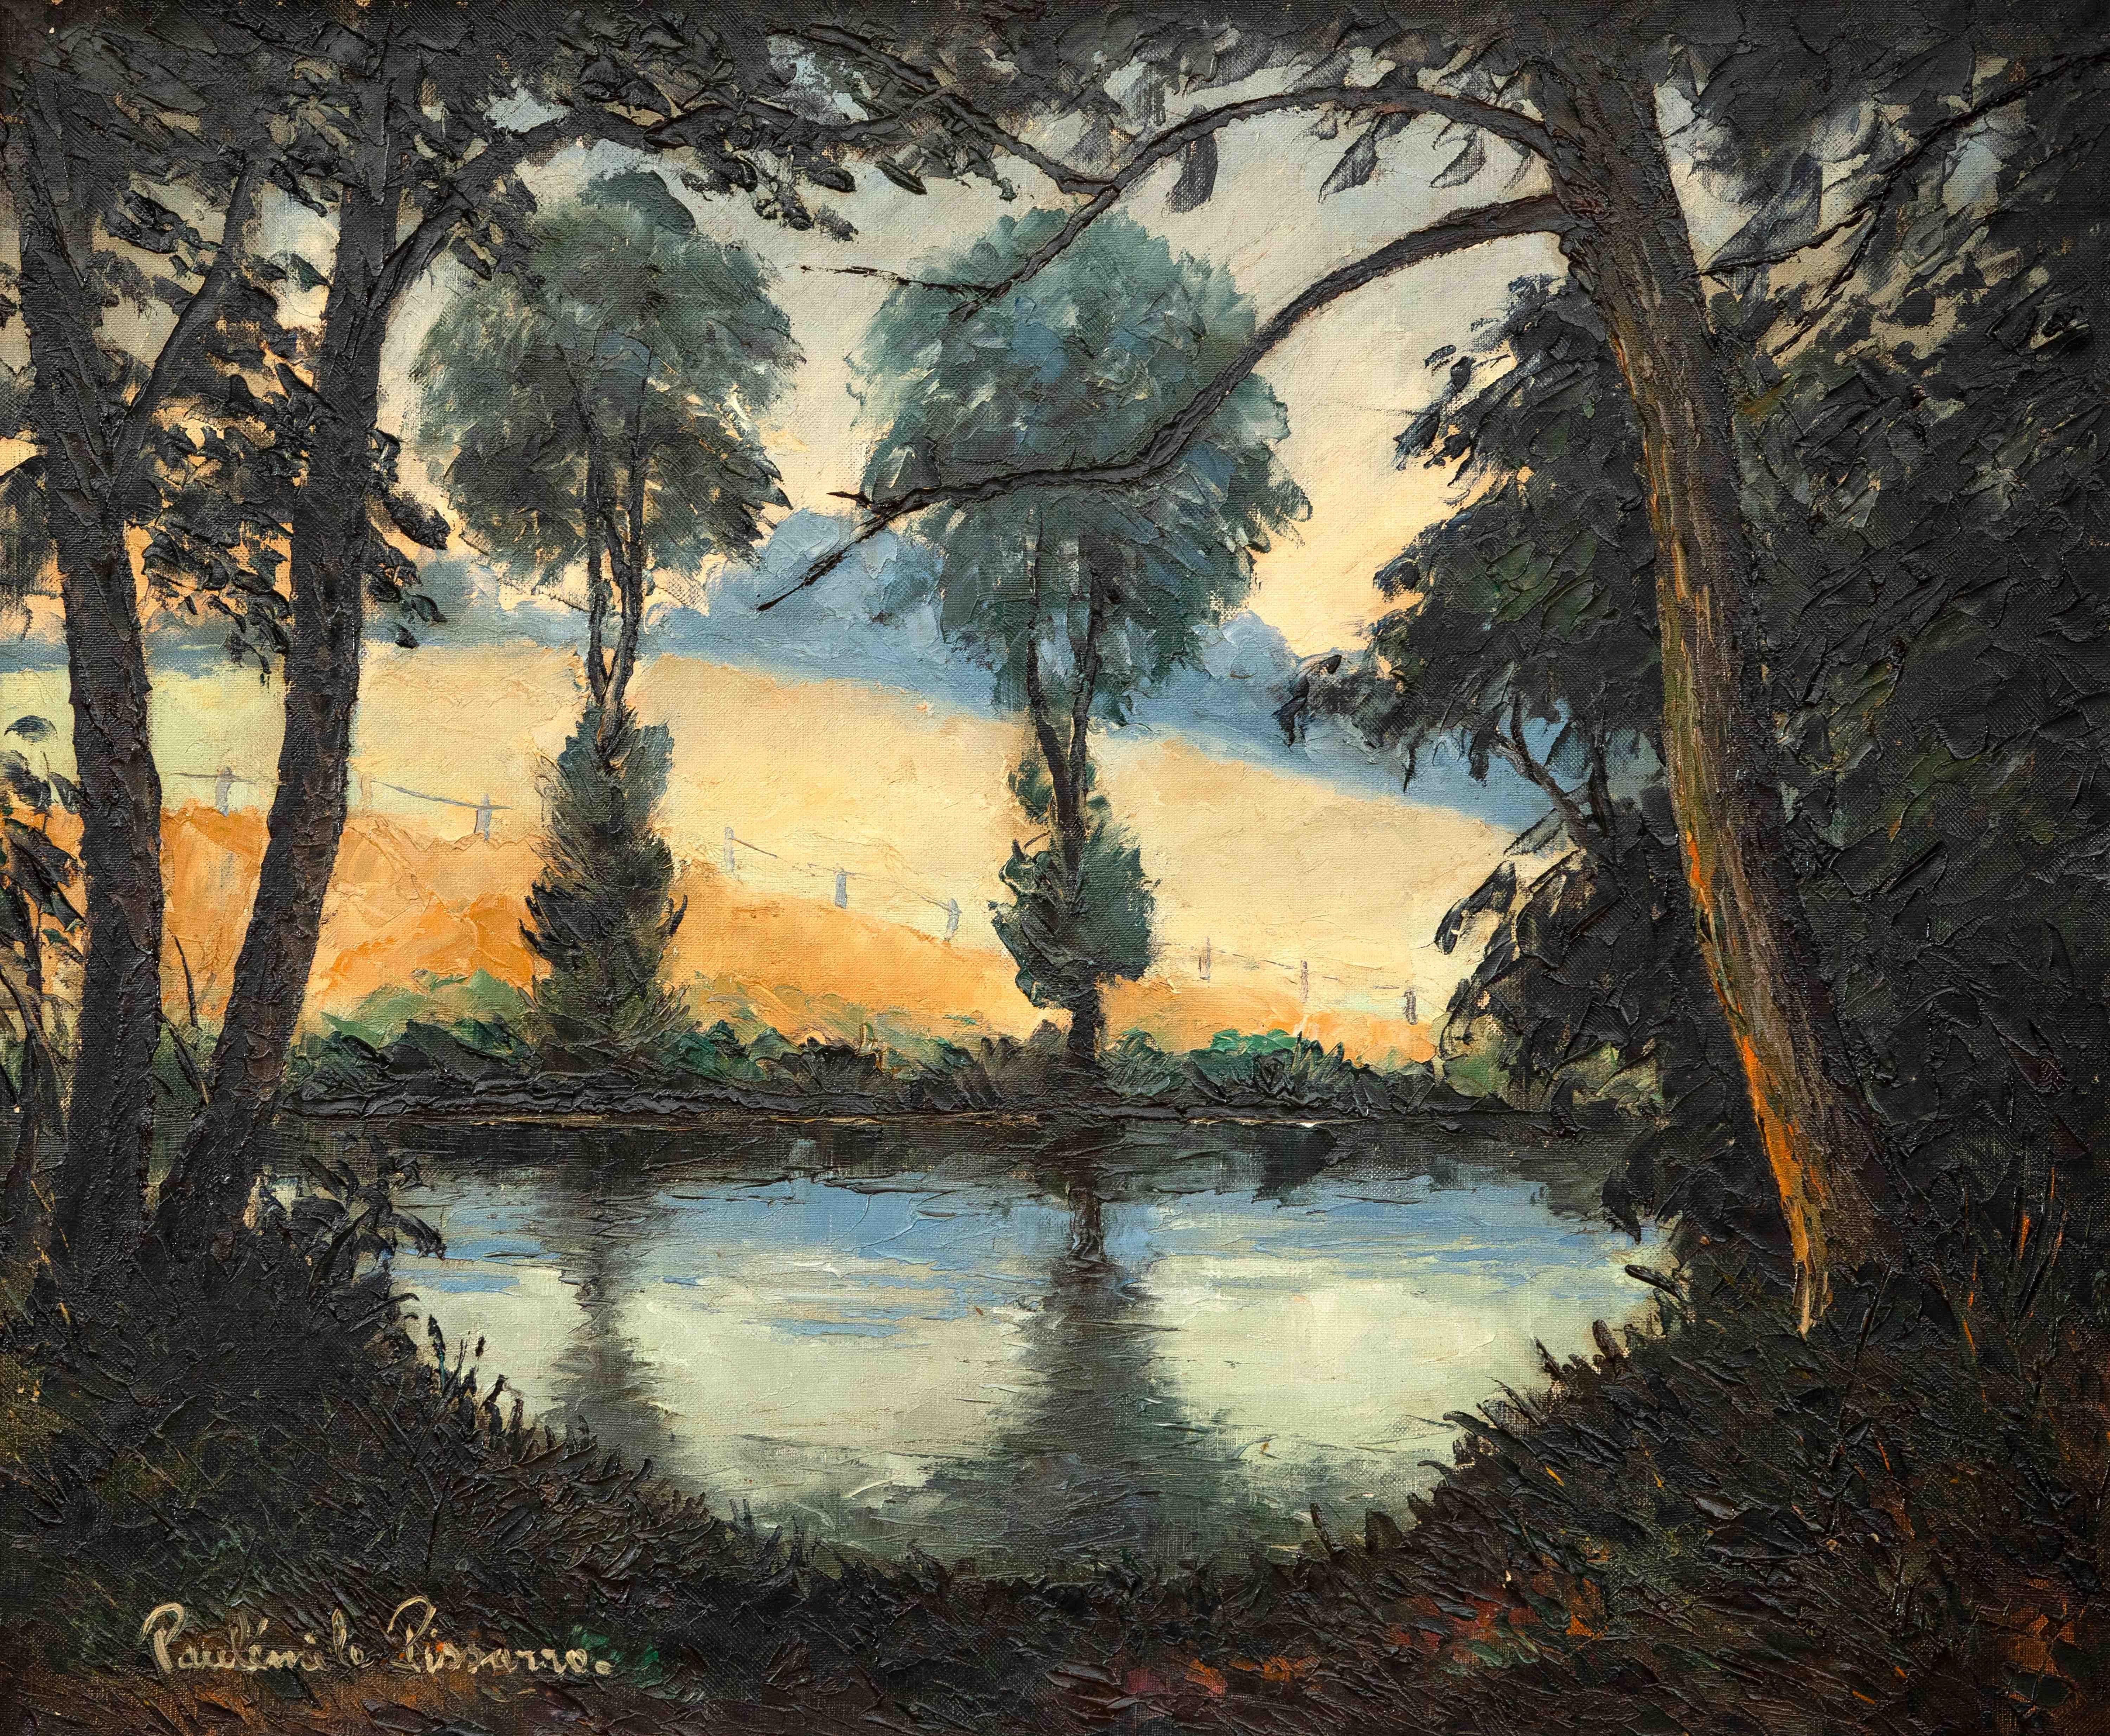 Les Bords de l’Orne au Soleil Couchant by Paulémile Pissarro -Landscape painting